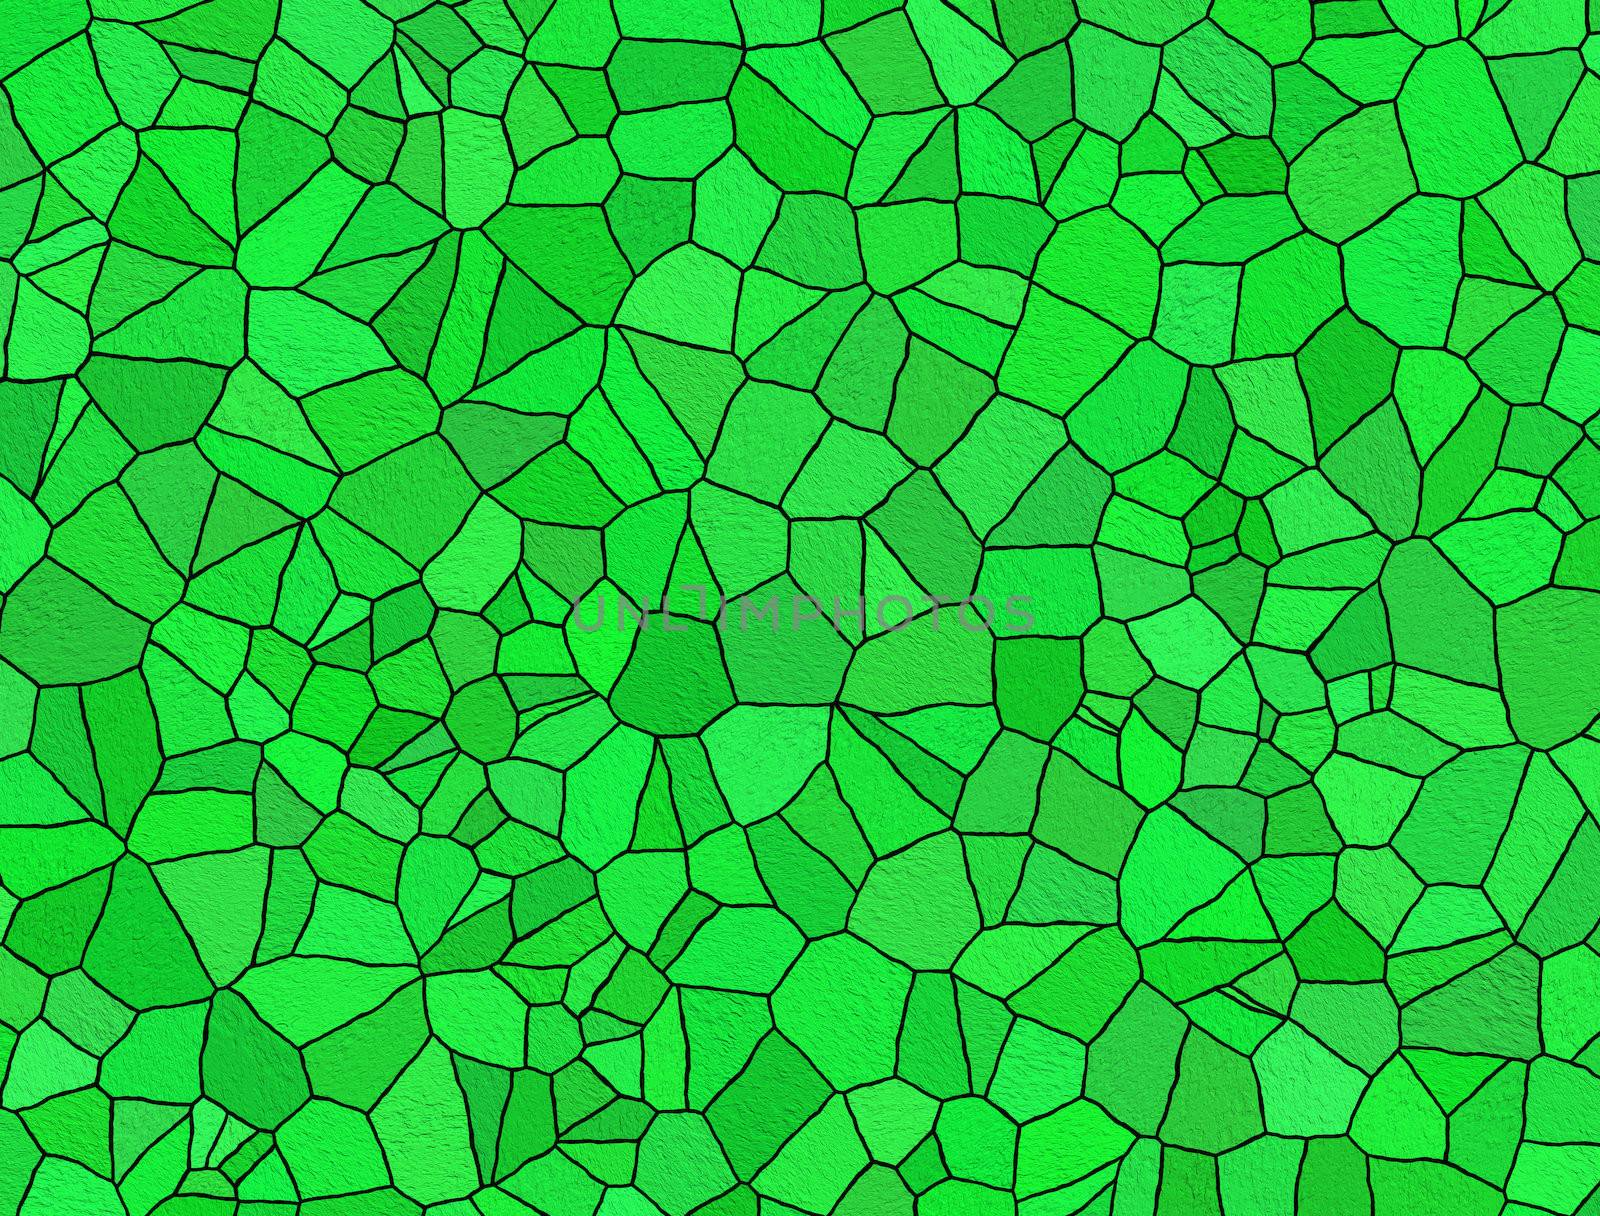 Broken tiles green pattern by sfinks